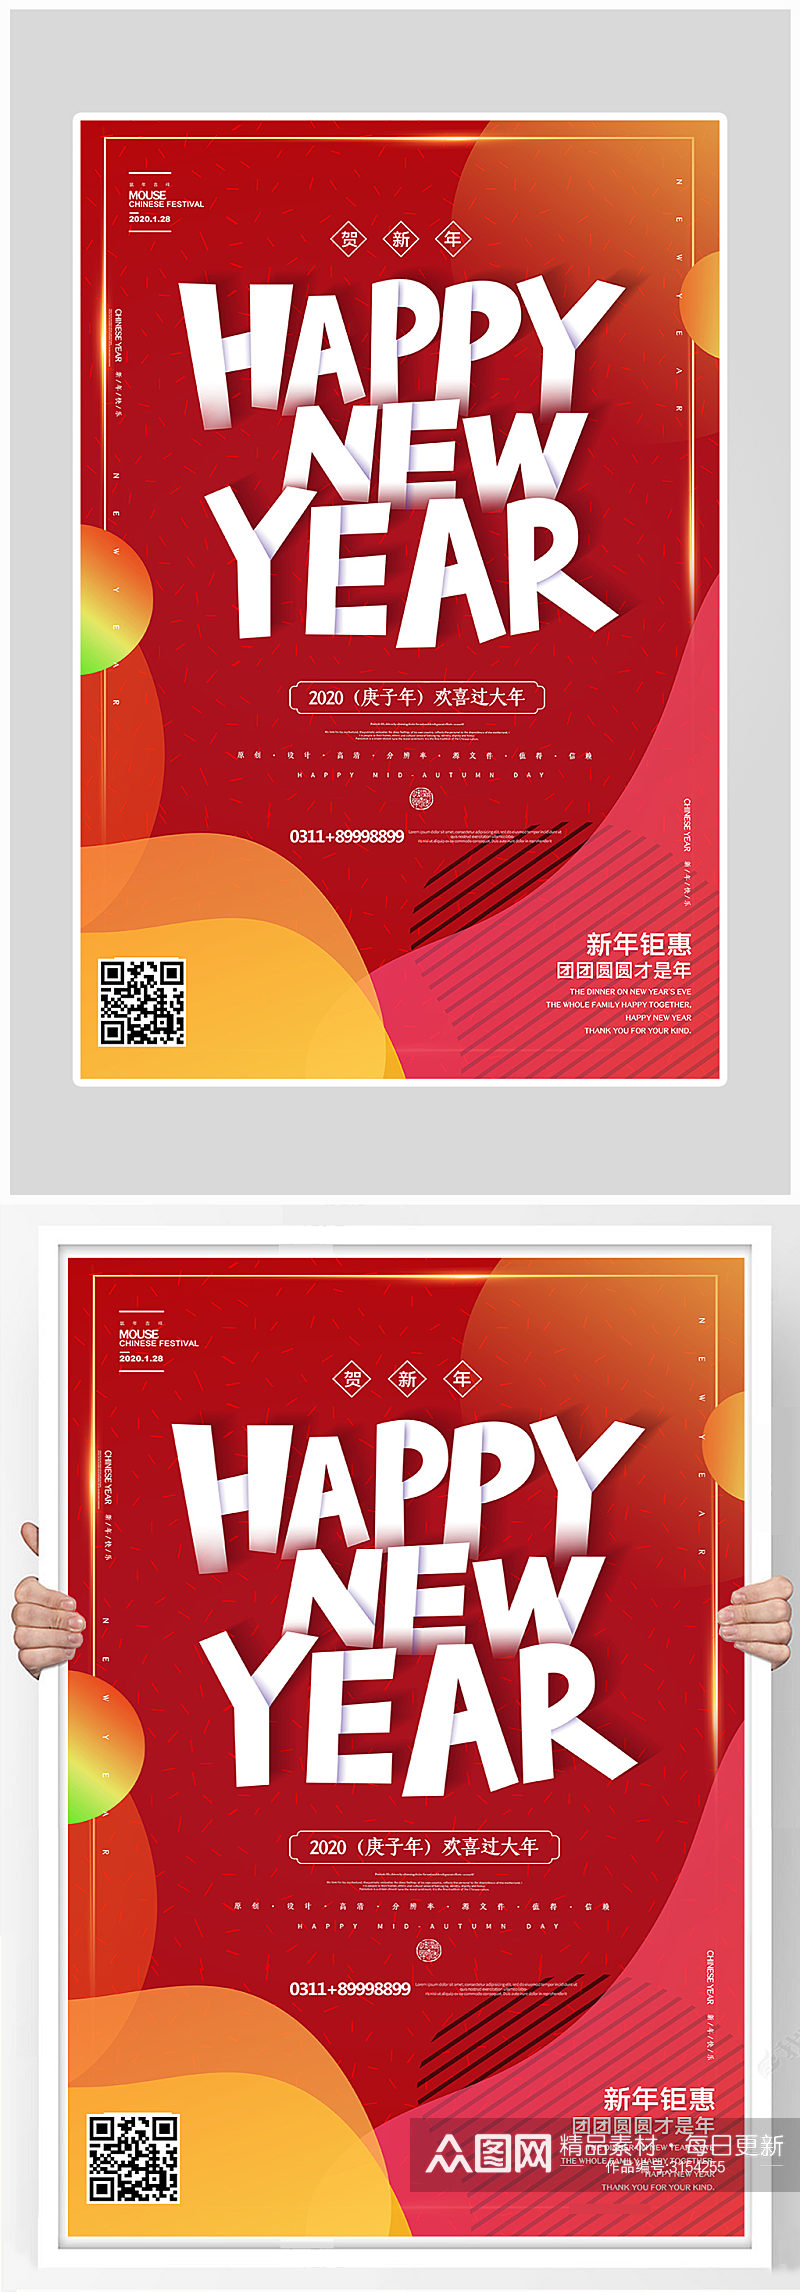 创意红色大气新年快乐海报设计素材